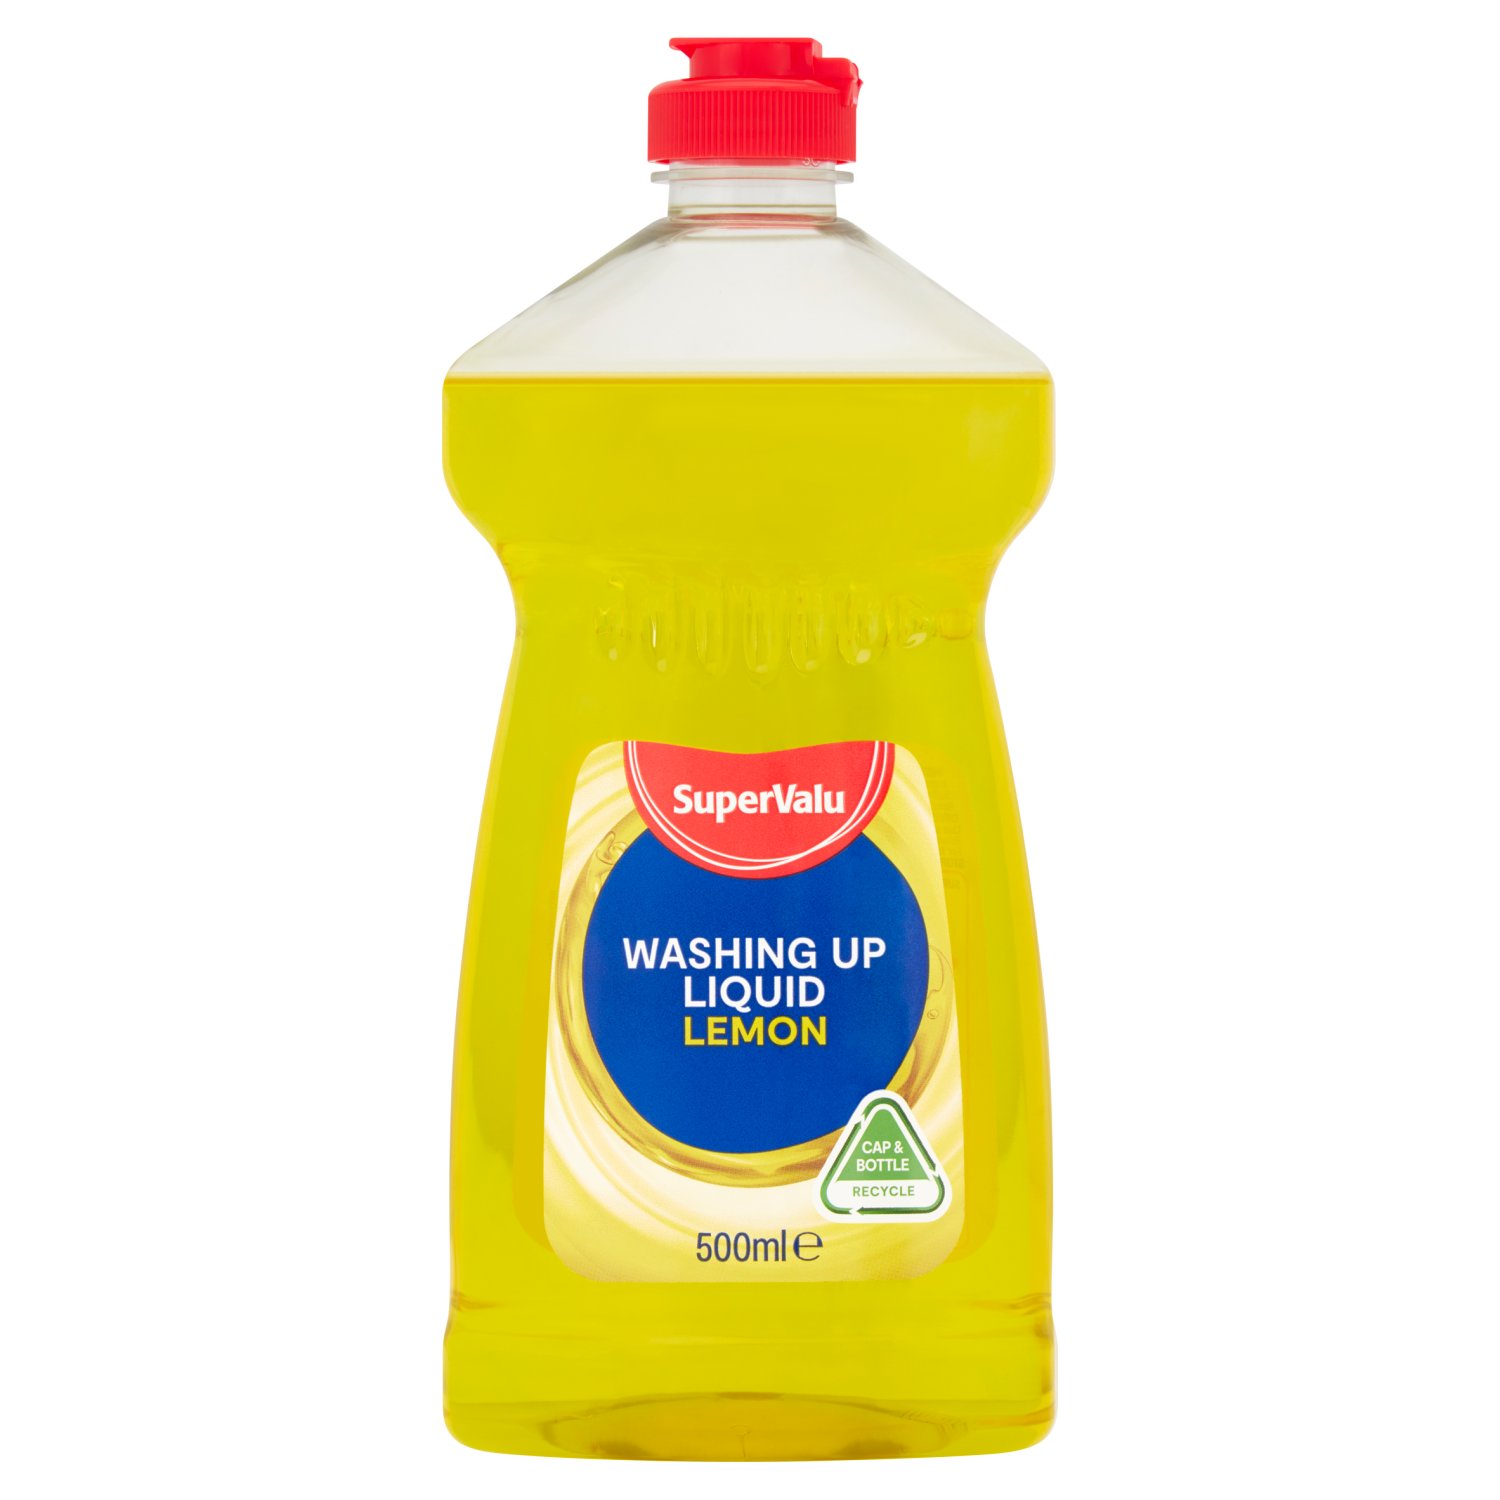 SuperValu Washing Up Liquid Lemon 500ml